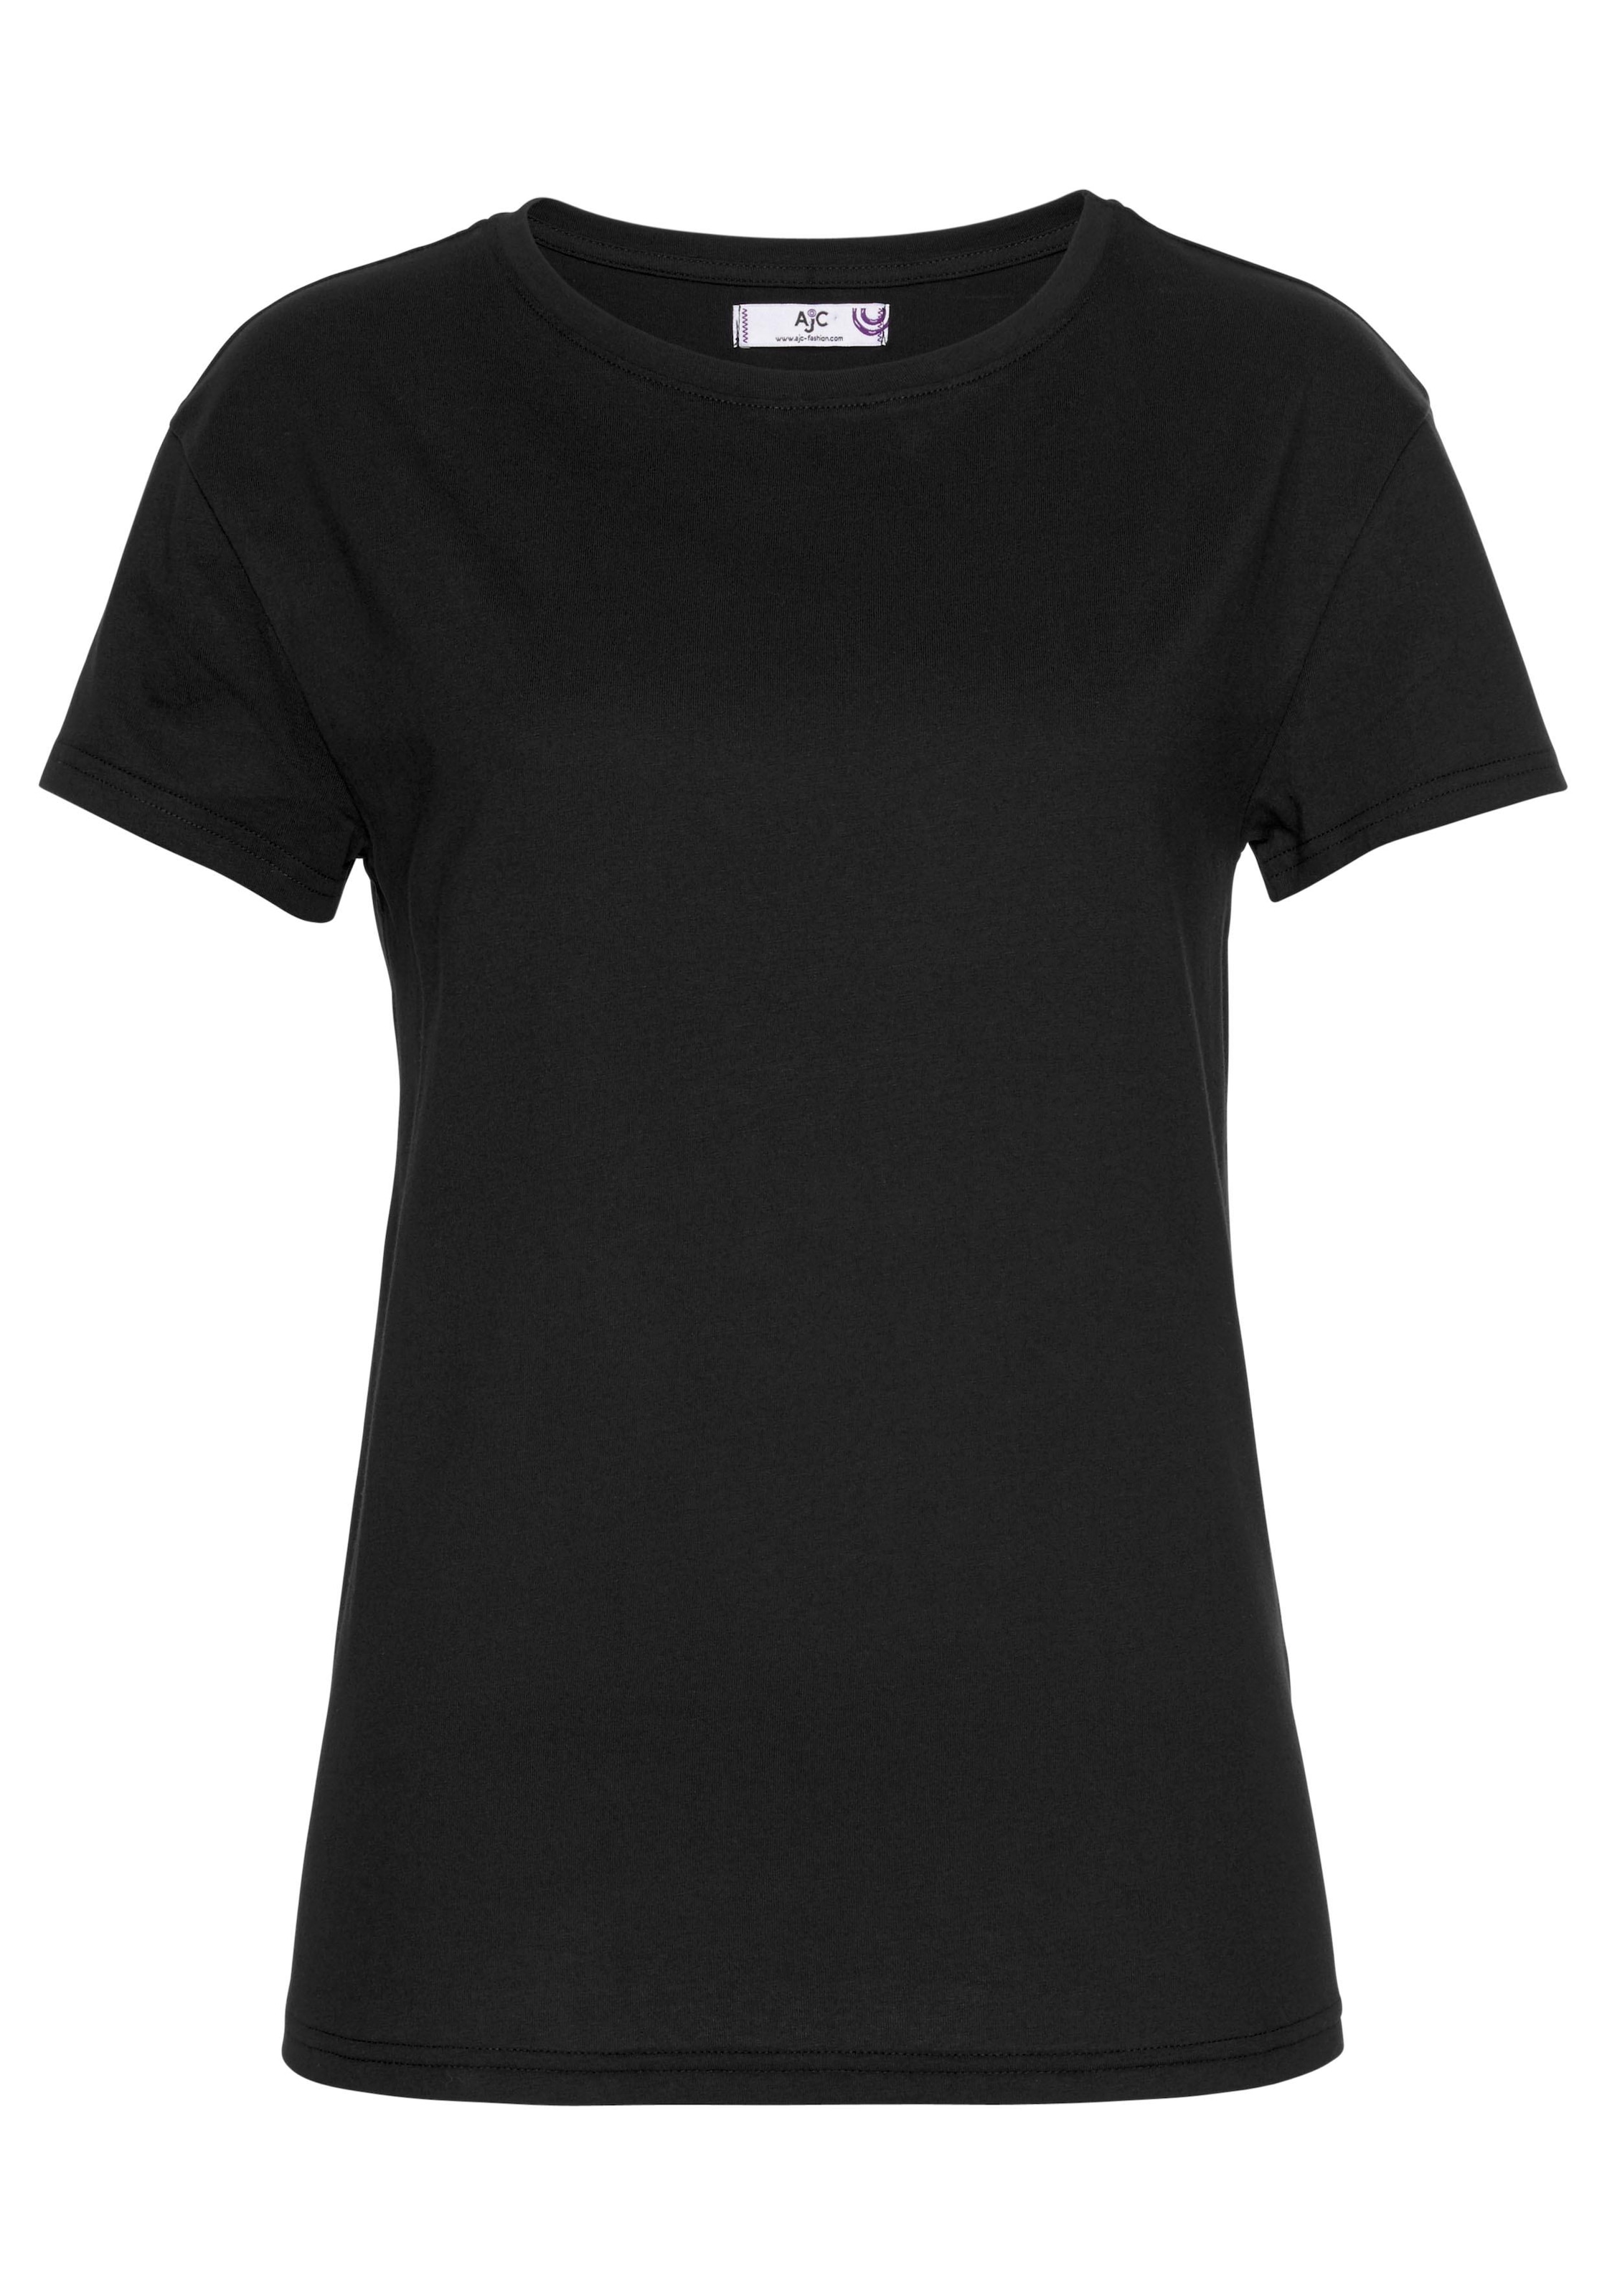 versandkostenfrei KOLLEKTION T-Shirt, im - trendigen Oversized-Look auf NEUE AJC